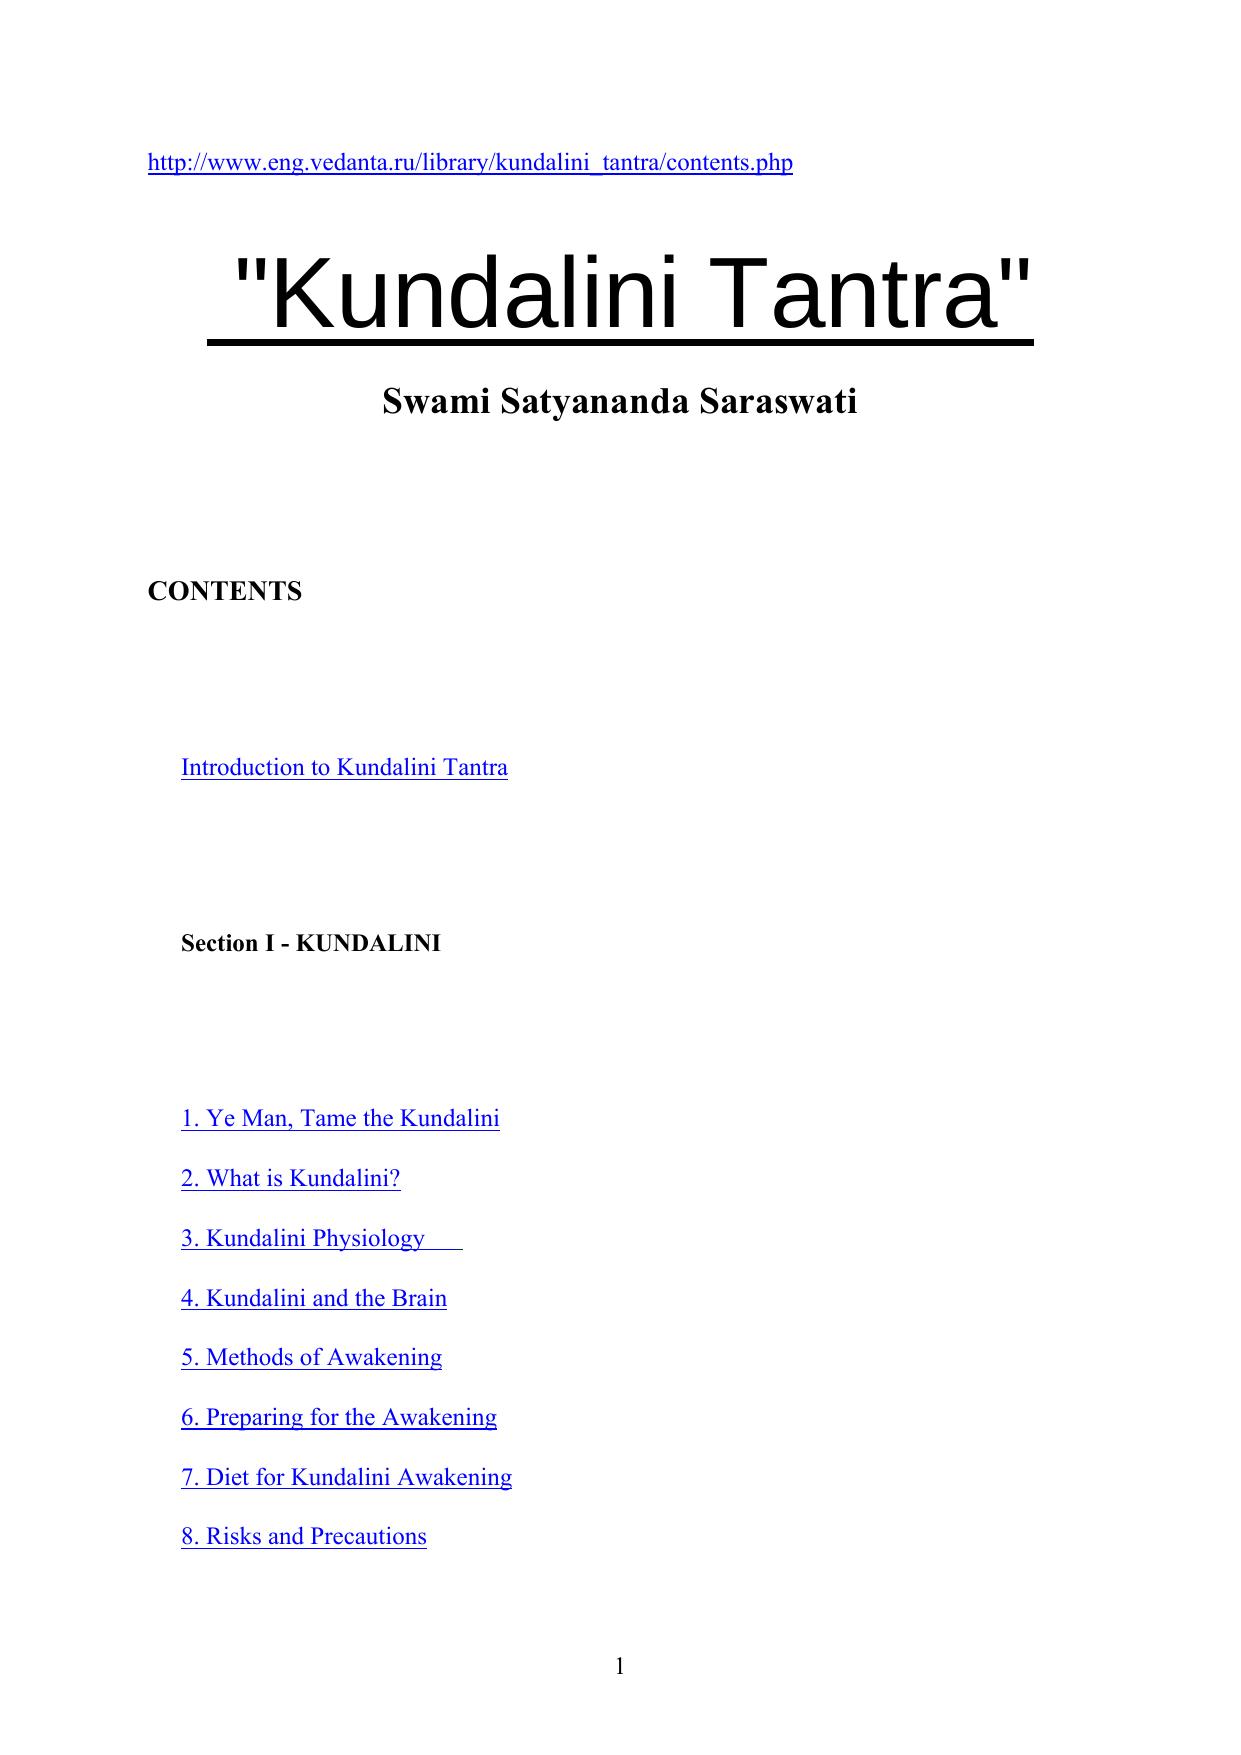 download urban tantra pdf free